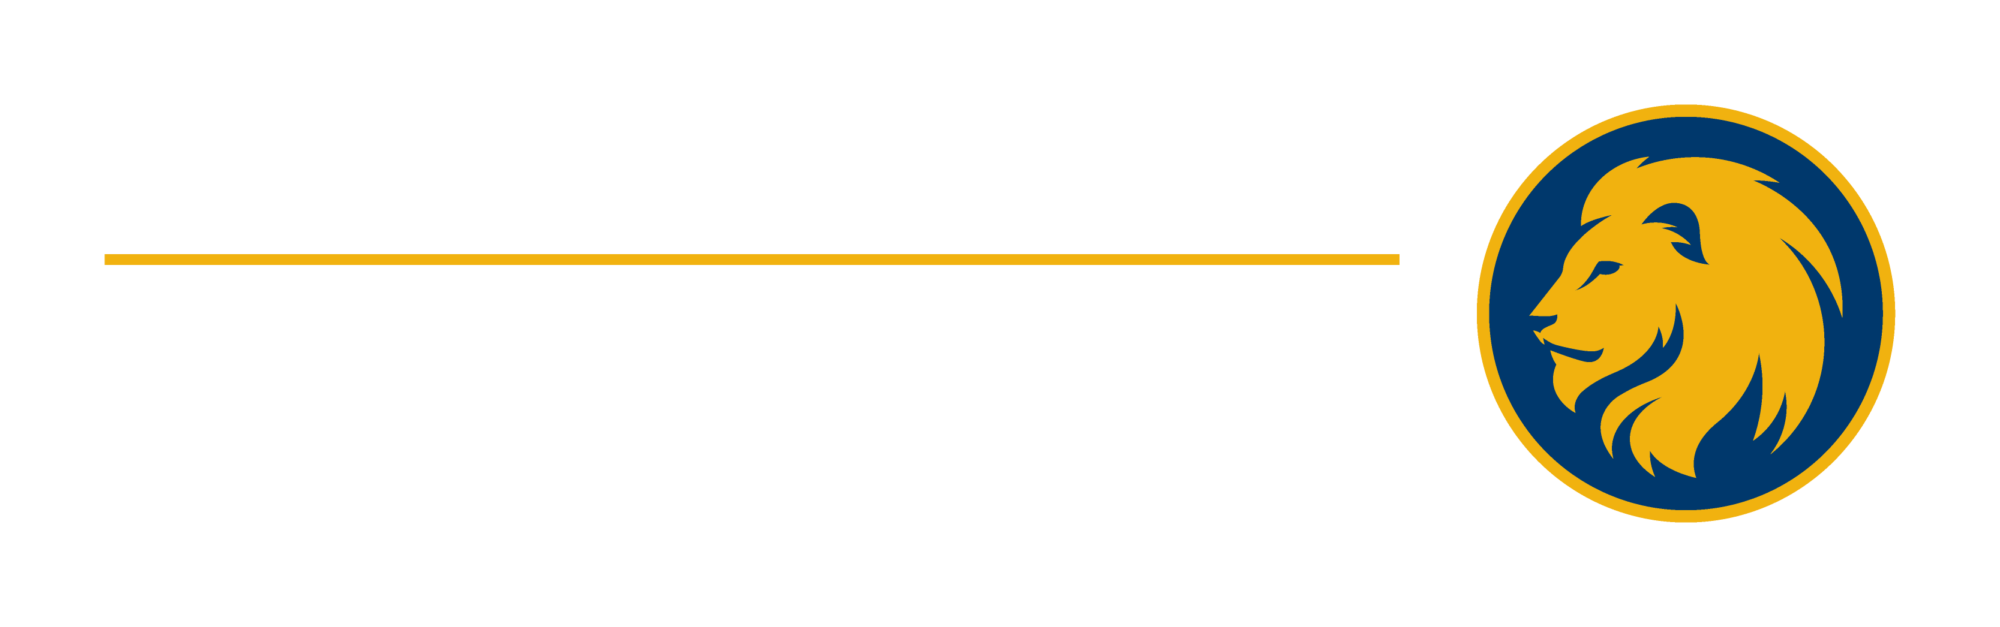 皇冠体育365赌博&M University-商务 logo.